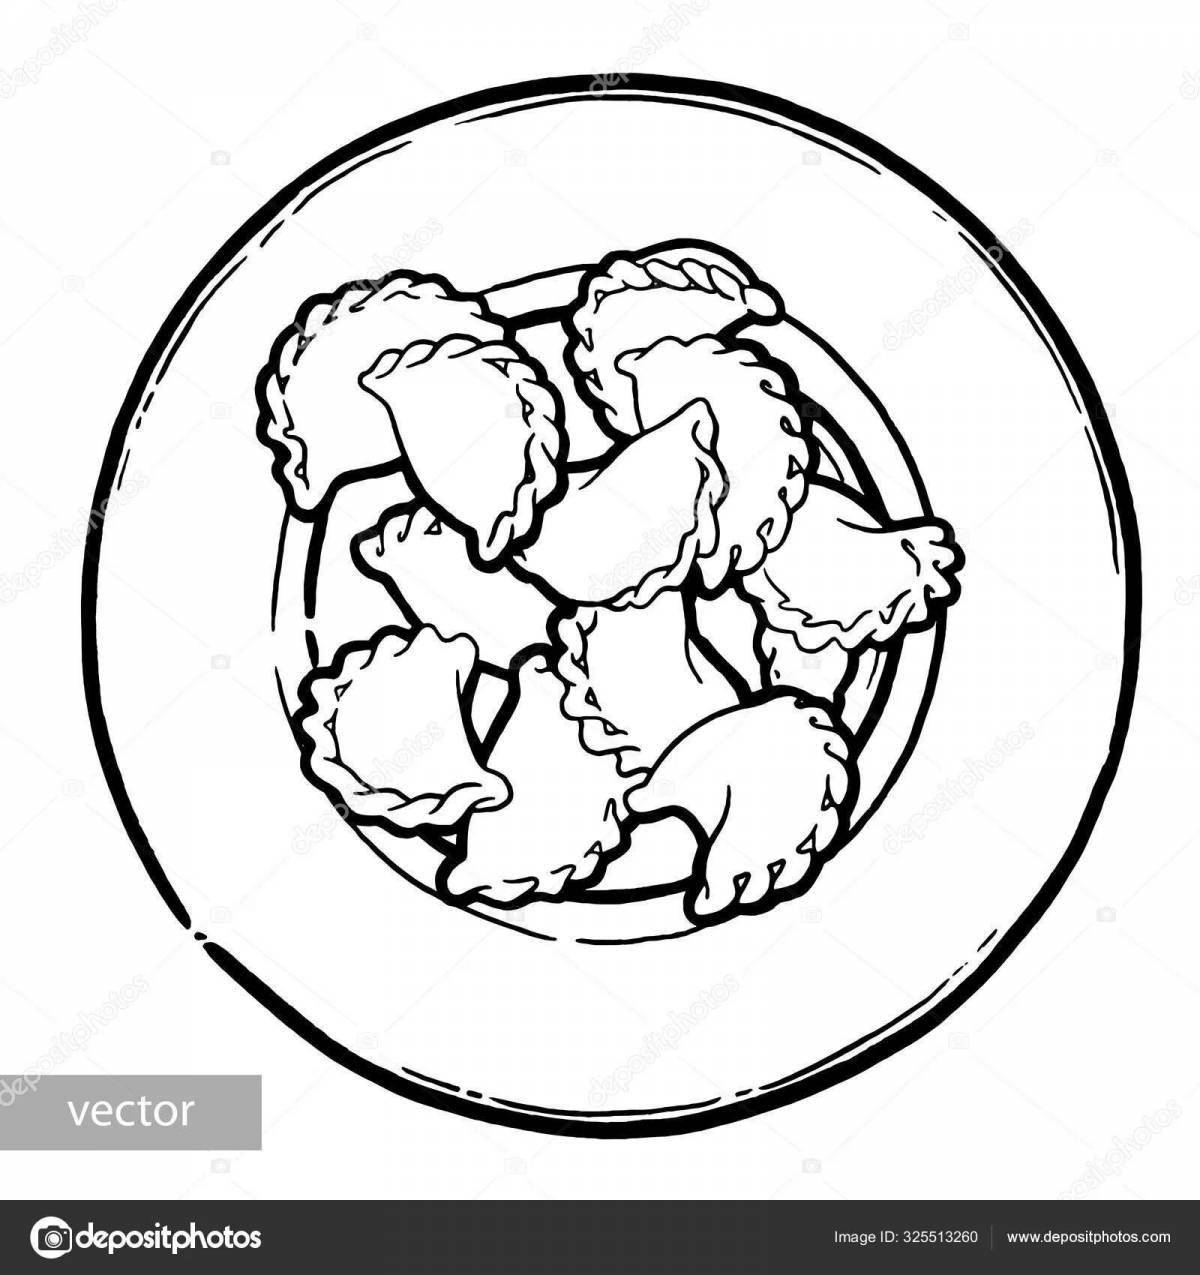 Comforting dumplings in a bowl